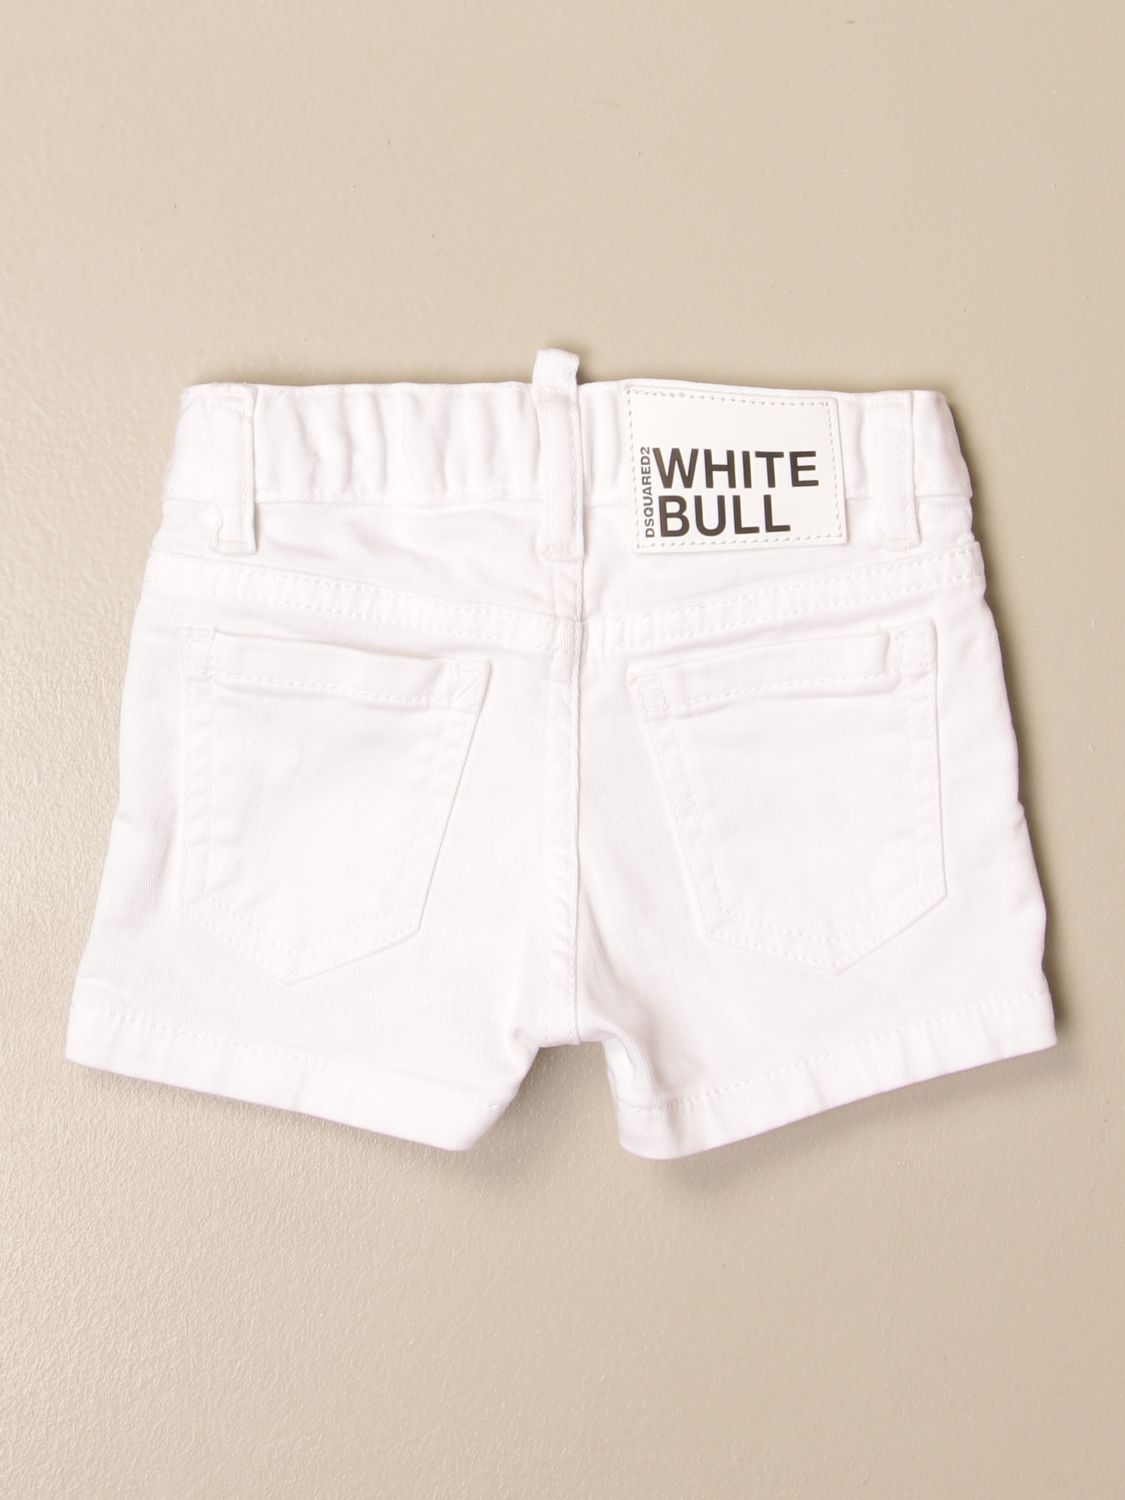 Pantalones cortos Dsquared2 Junior: Pantalones cortos Dsquared2 Junior para bebé blanco 2